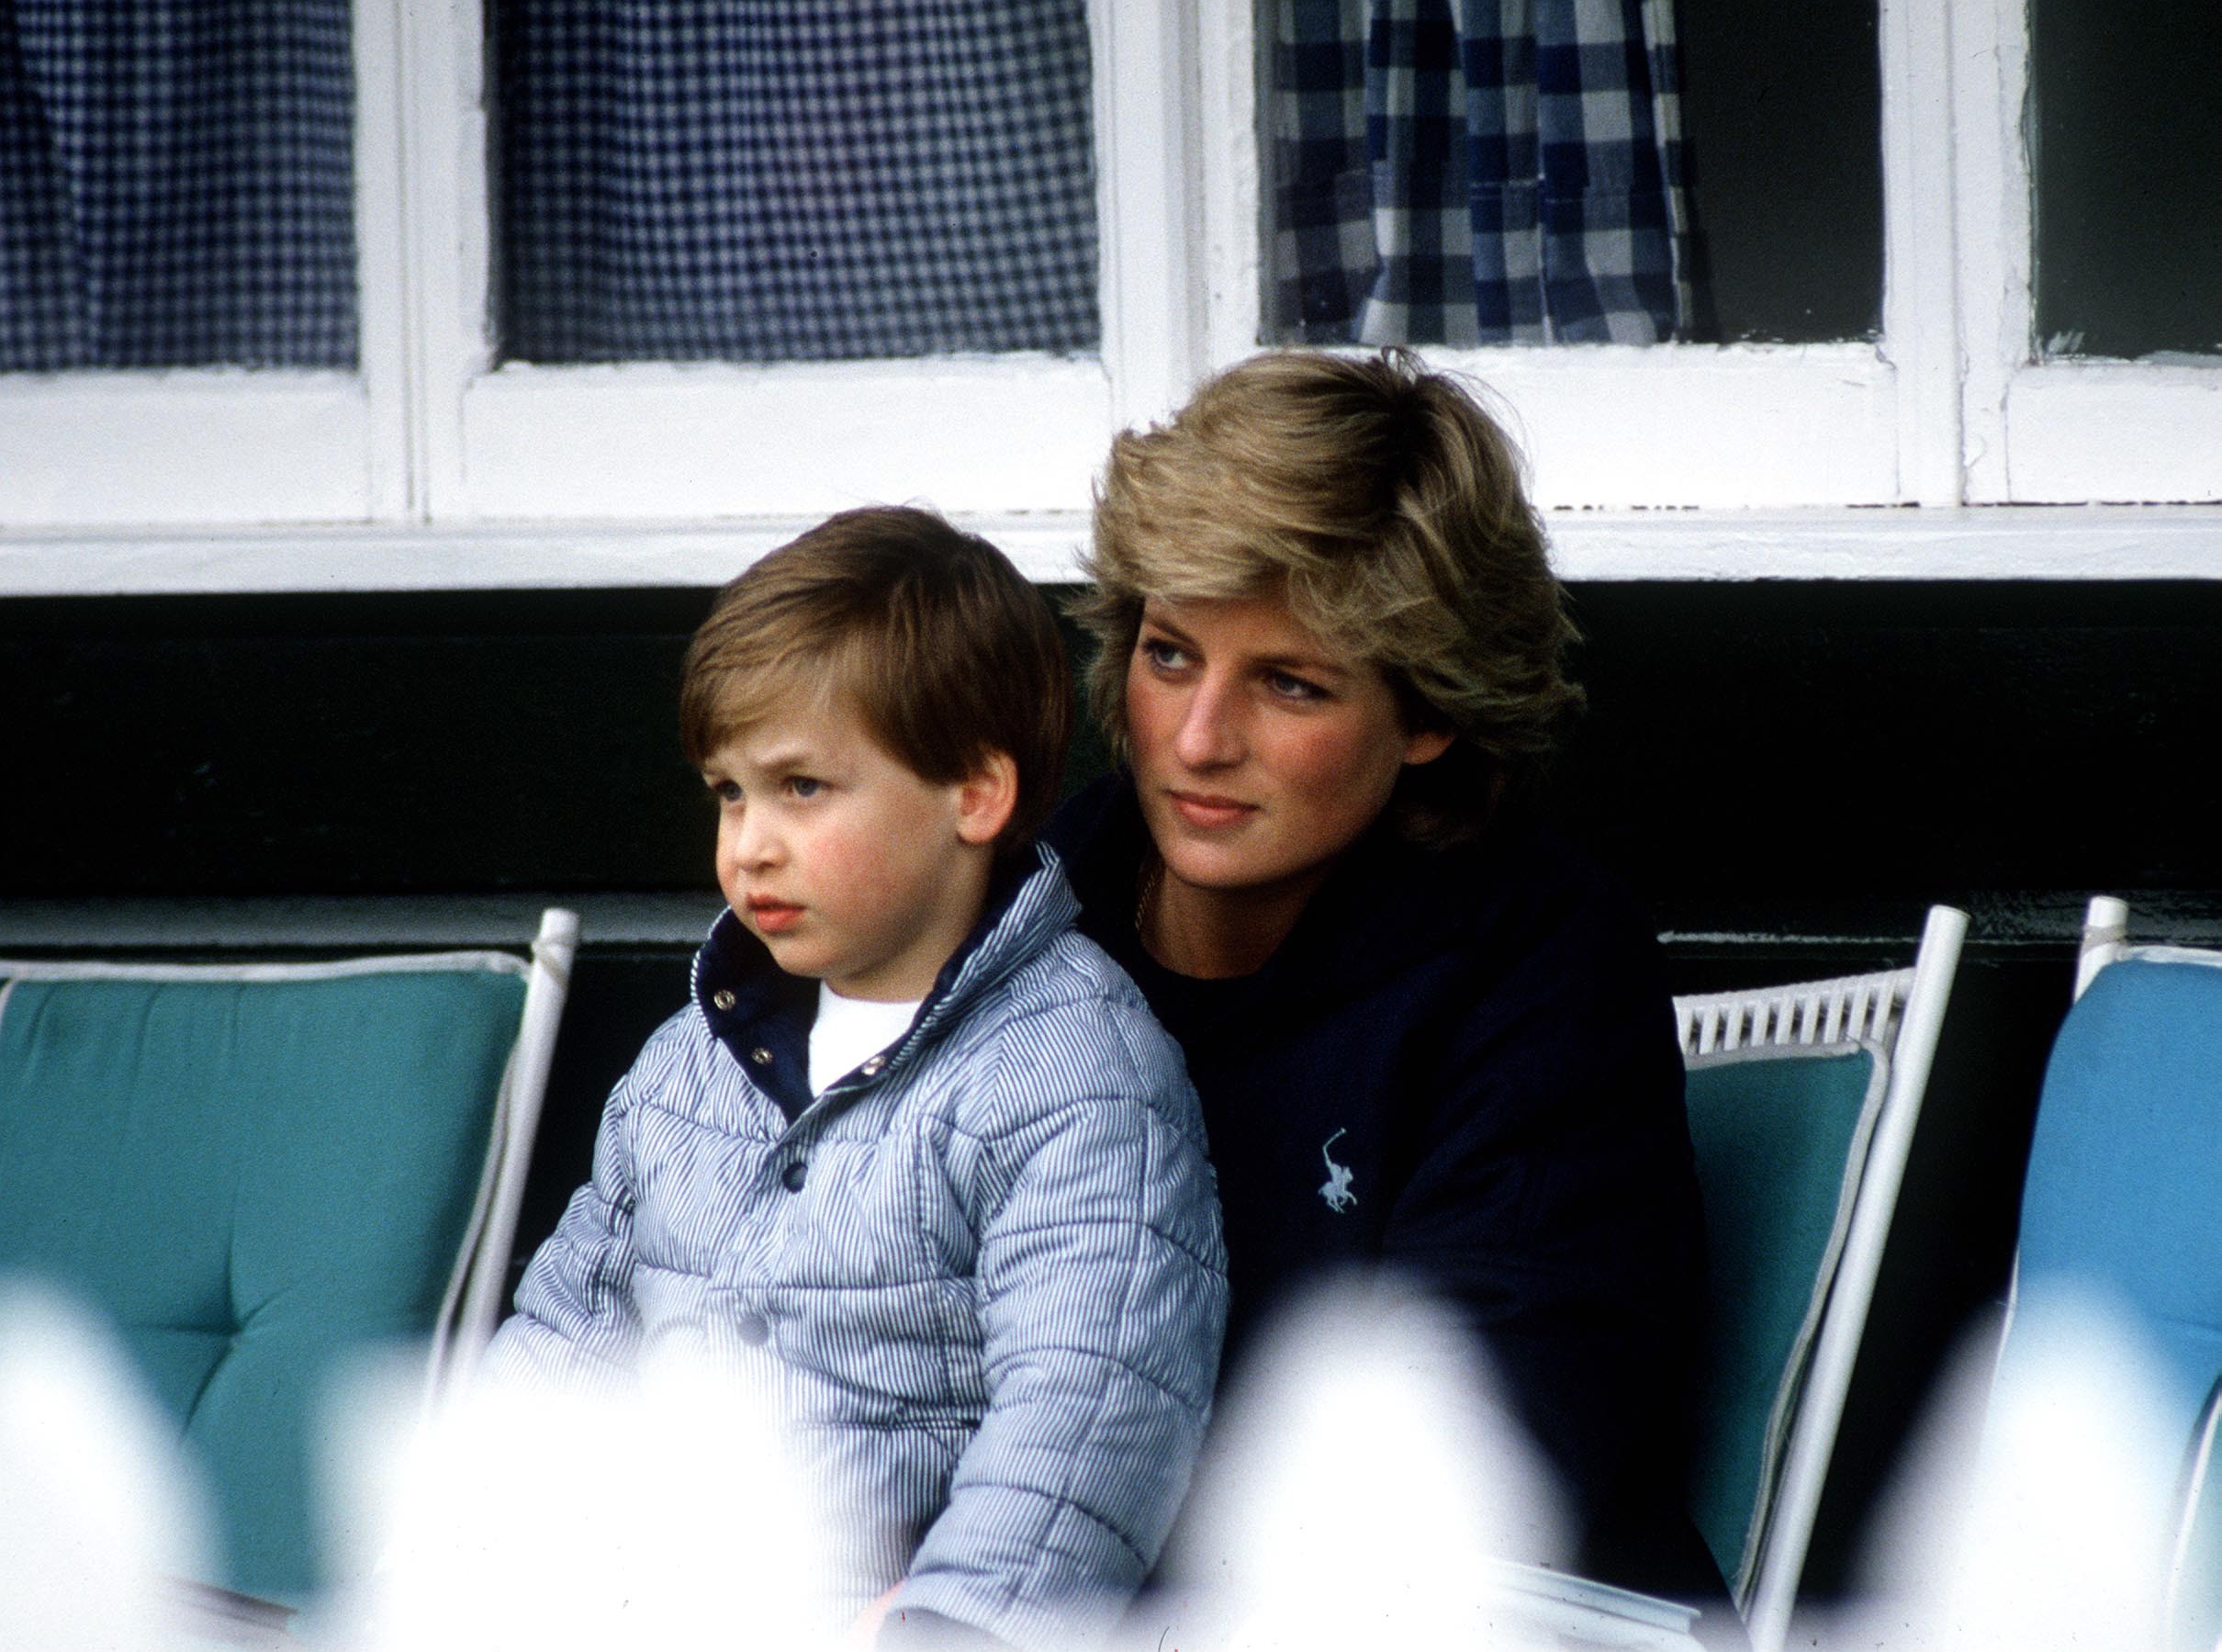 A Princesa Diana (1961-1997) com o filho William no colo em foto datada de 1987 (Foto: Getty Images)